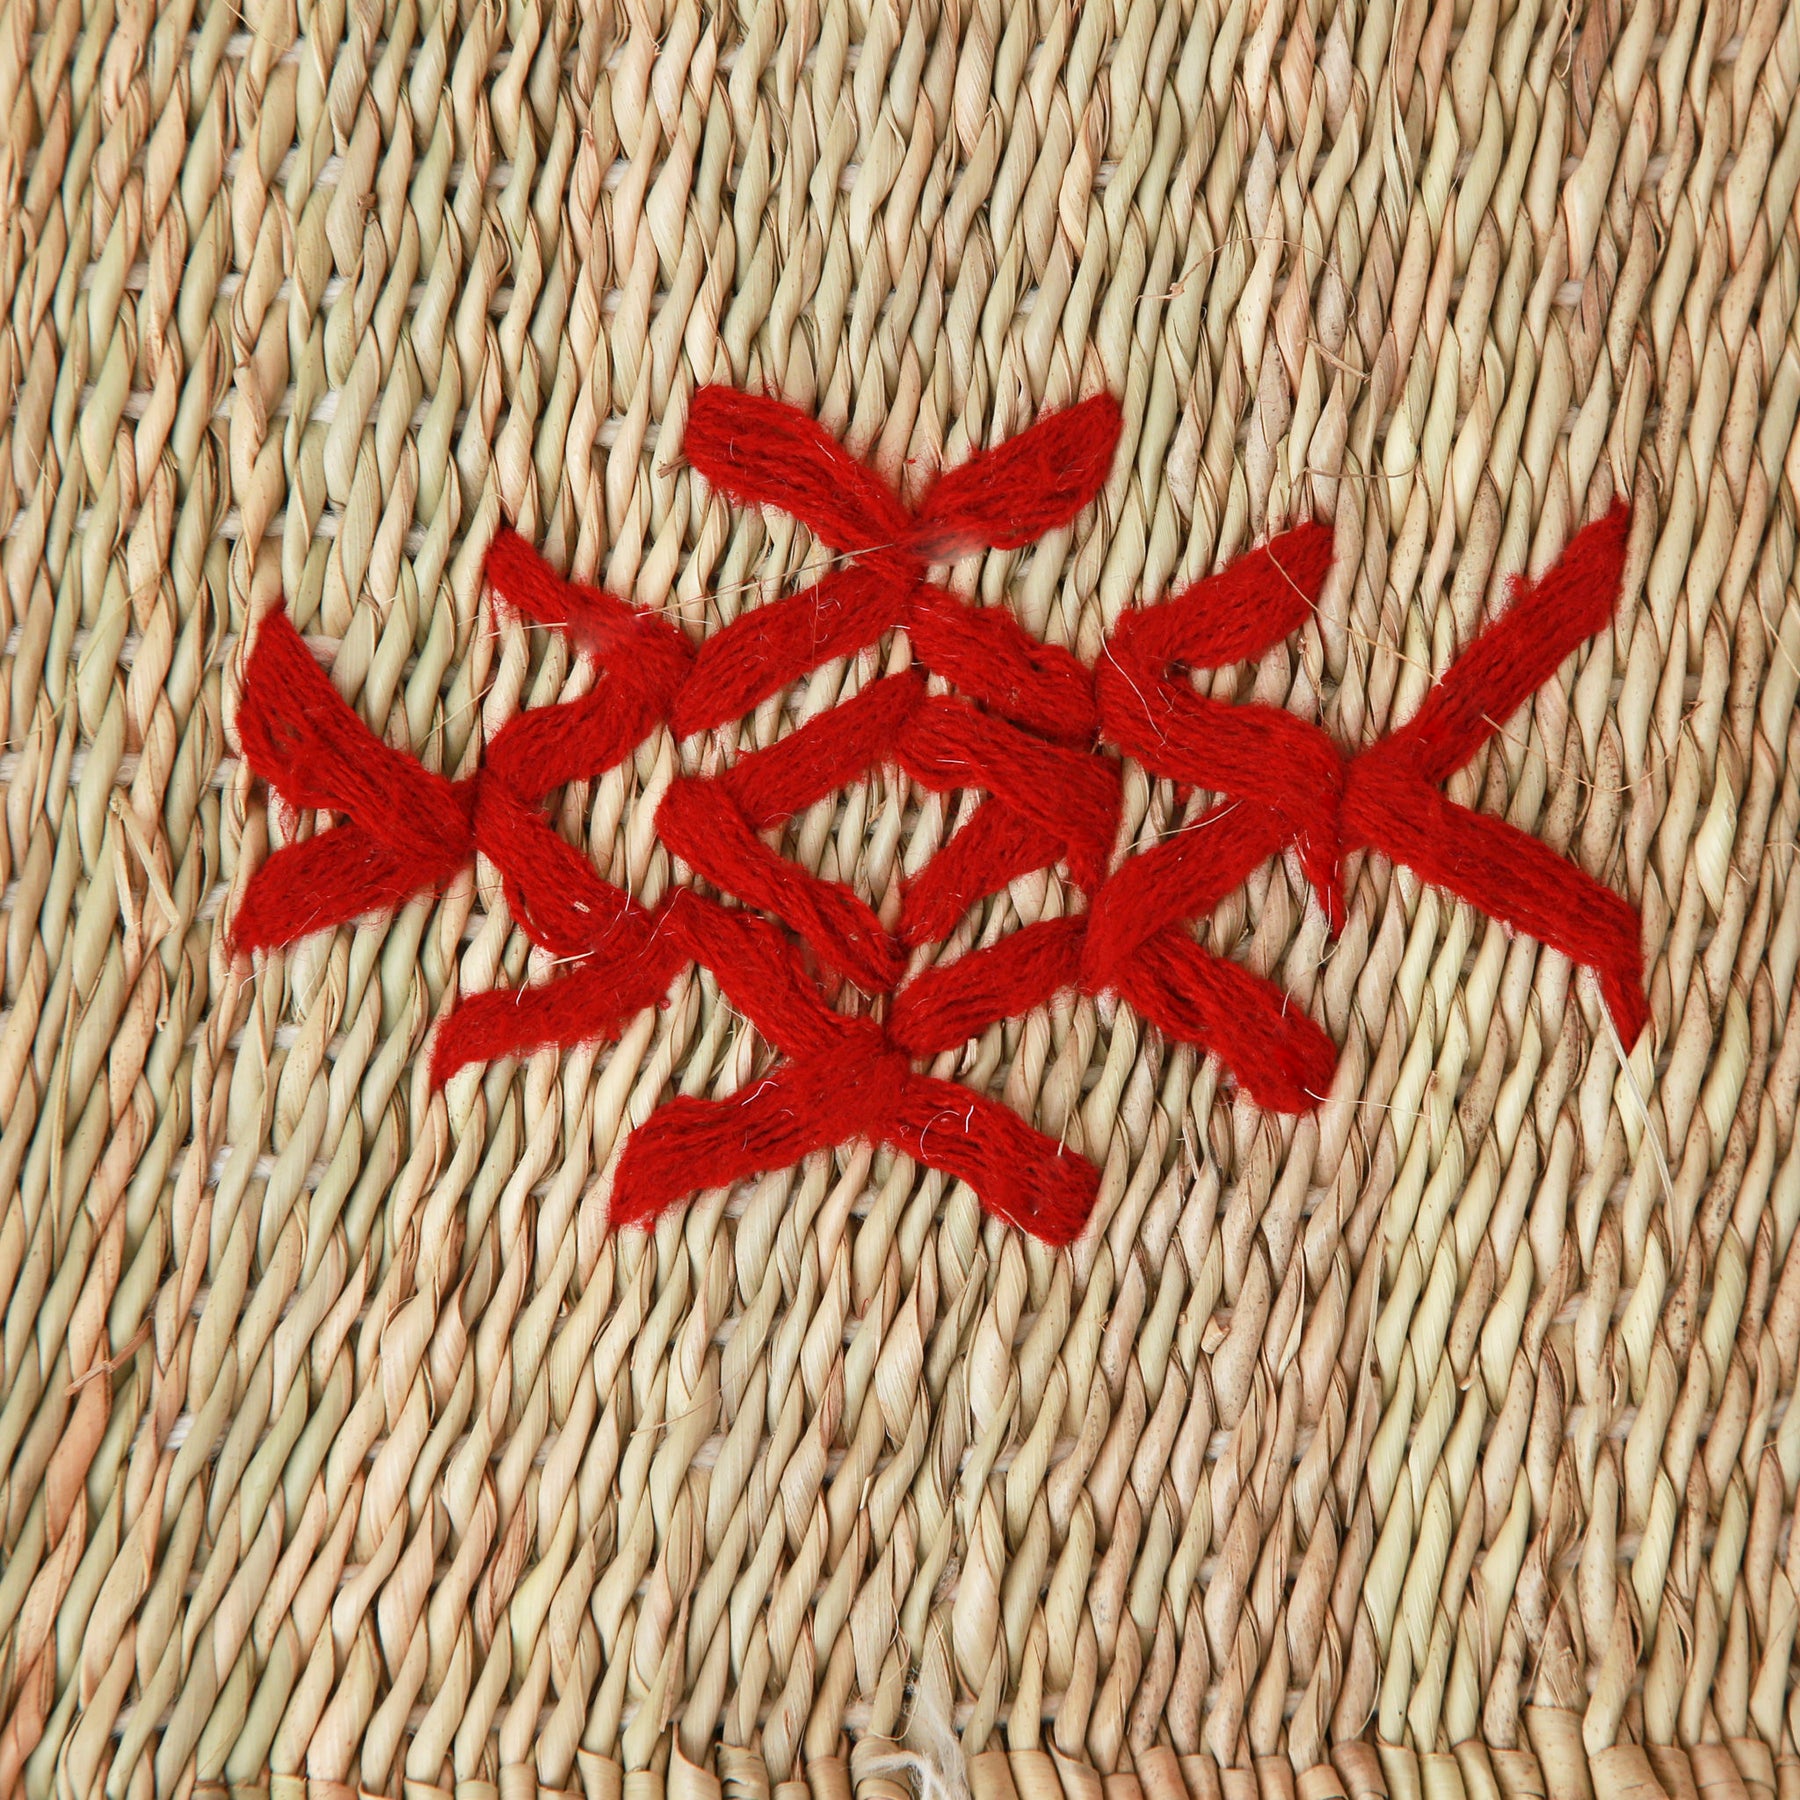 dettaglio del simbolo di una piccola stuoia hassira intrecciata con paglia di palma e ricamata con simboli in lana rossa